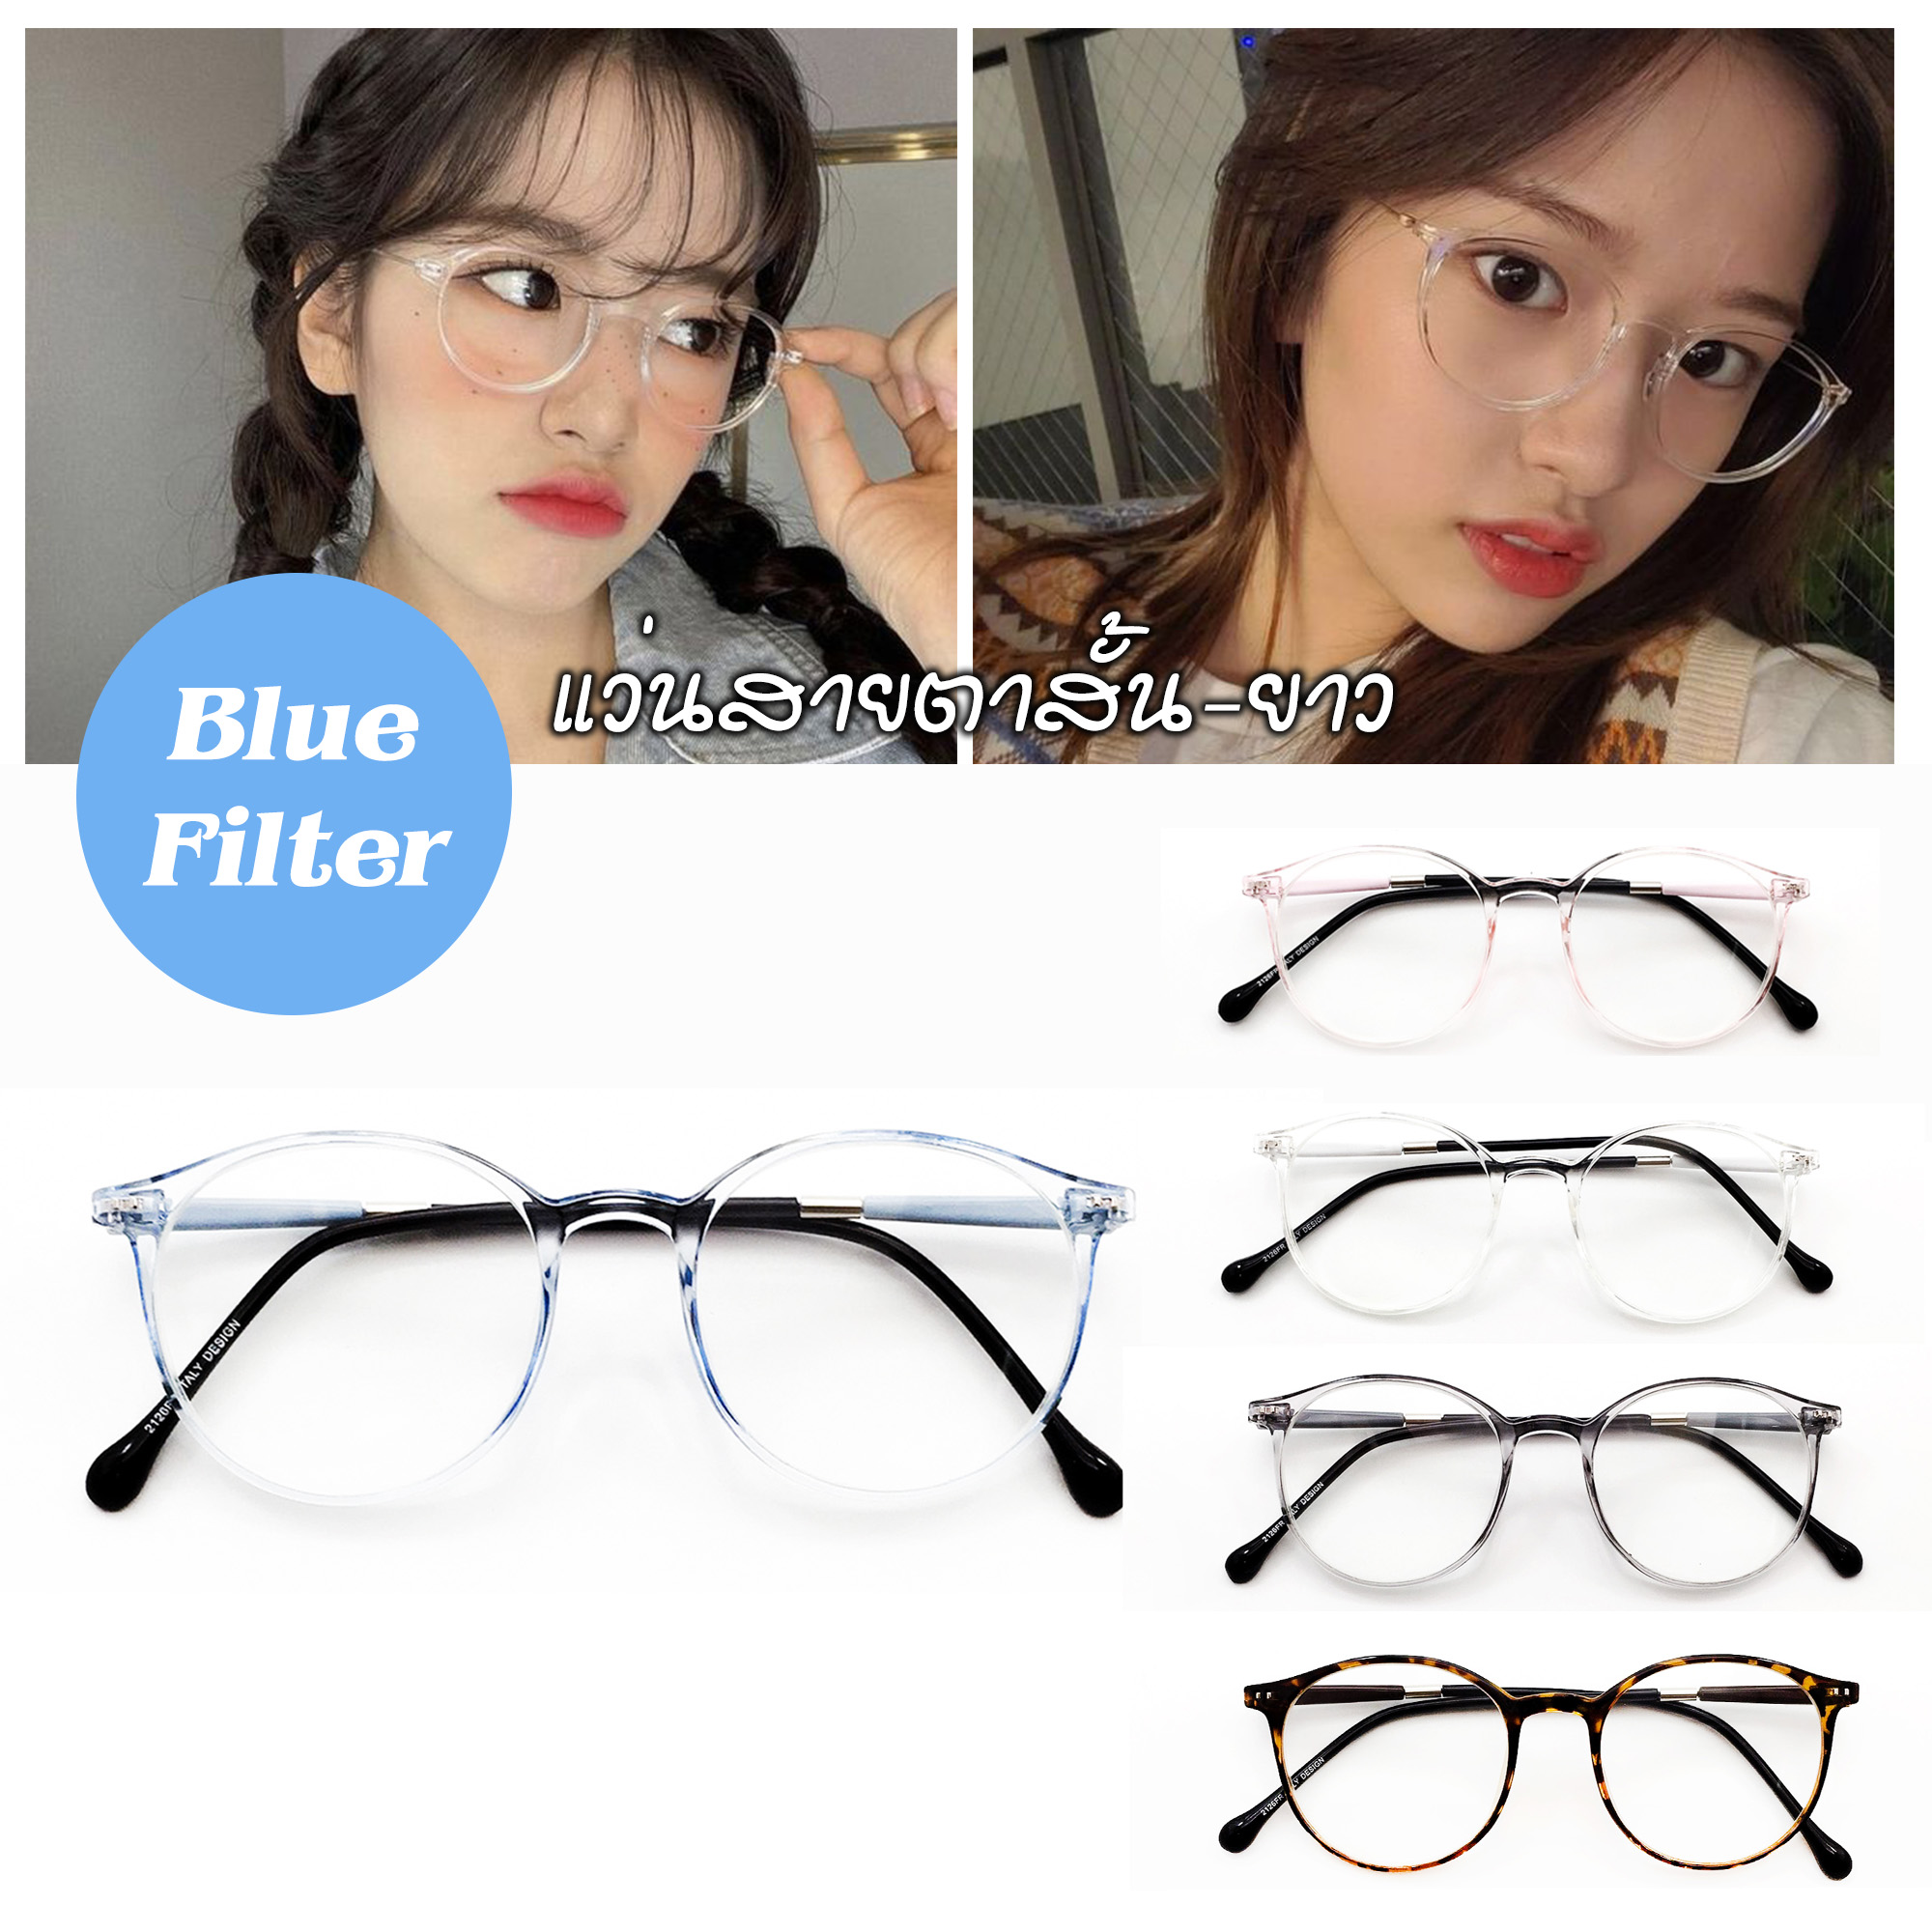 Suboptic แว่นสายตาสั้นและสายตายาว เลนสิ์Blue filter แว่นตากรองแสงสีฟ้าที่มีโทษ พร้อมผ้าเช็ดแว่นและถุงผ้าใส่แว่น